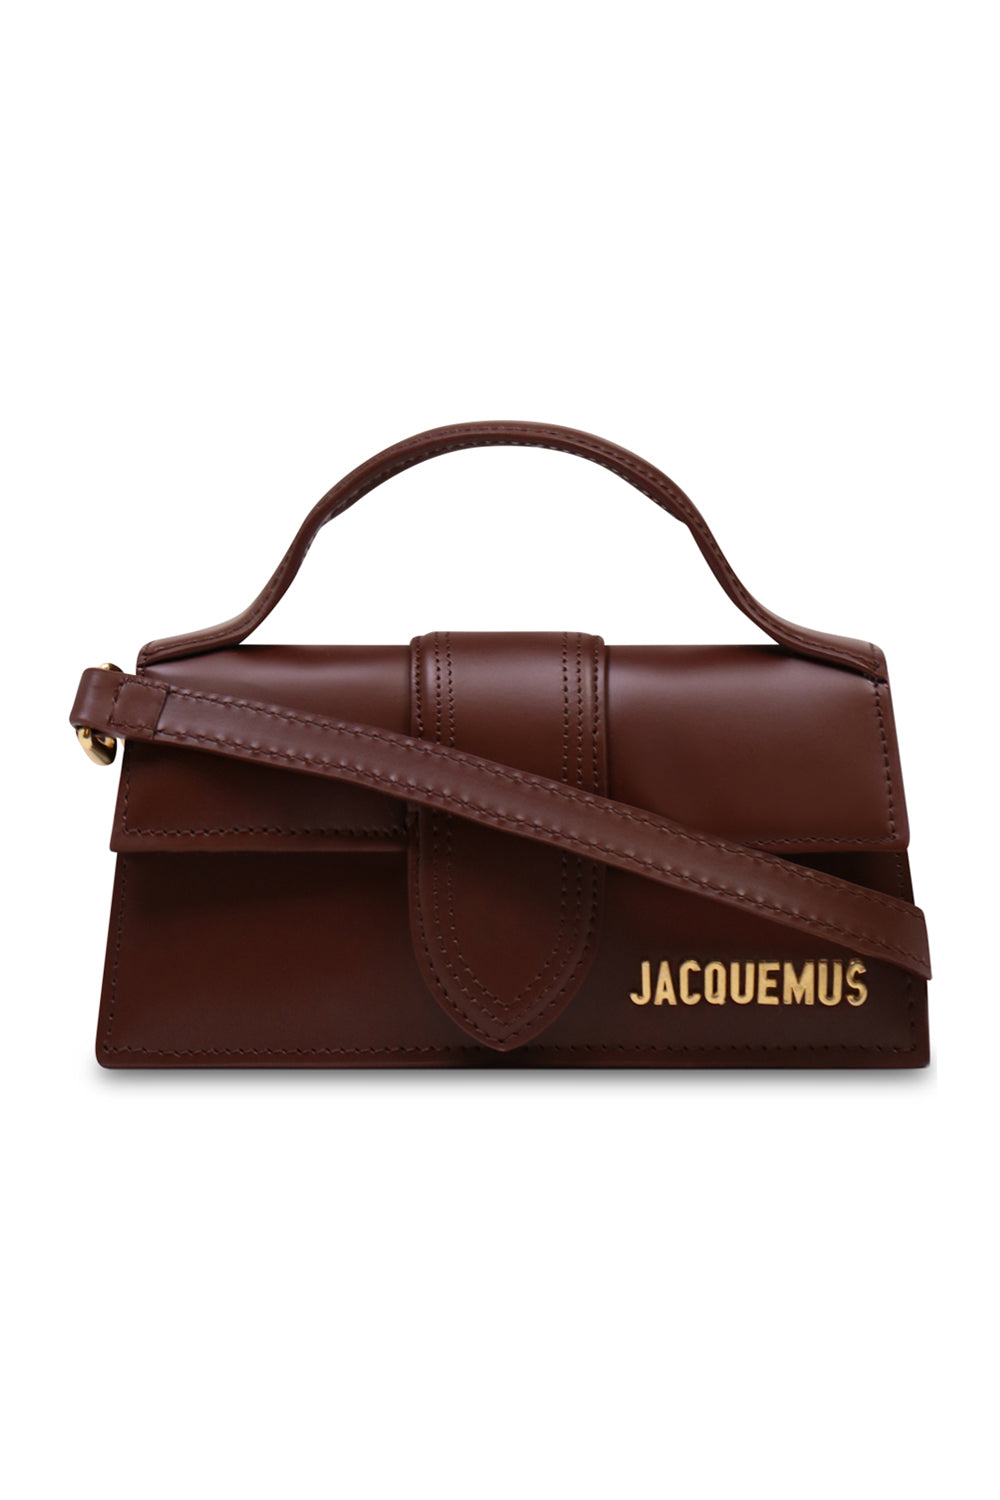 JACQUEMUS BAGS BROWN LE BAMBINO BAG | DARK BROWN